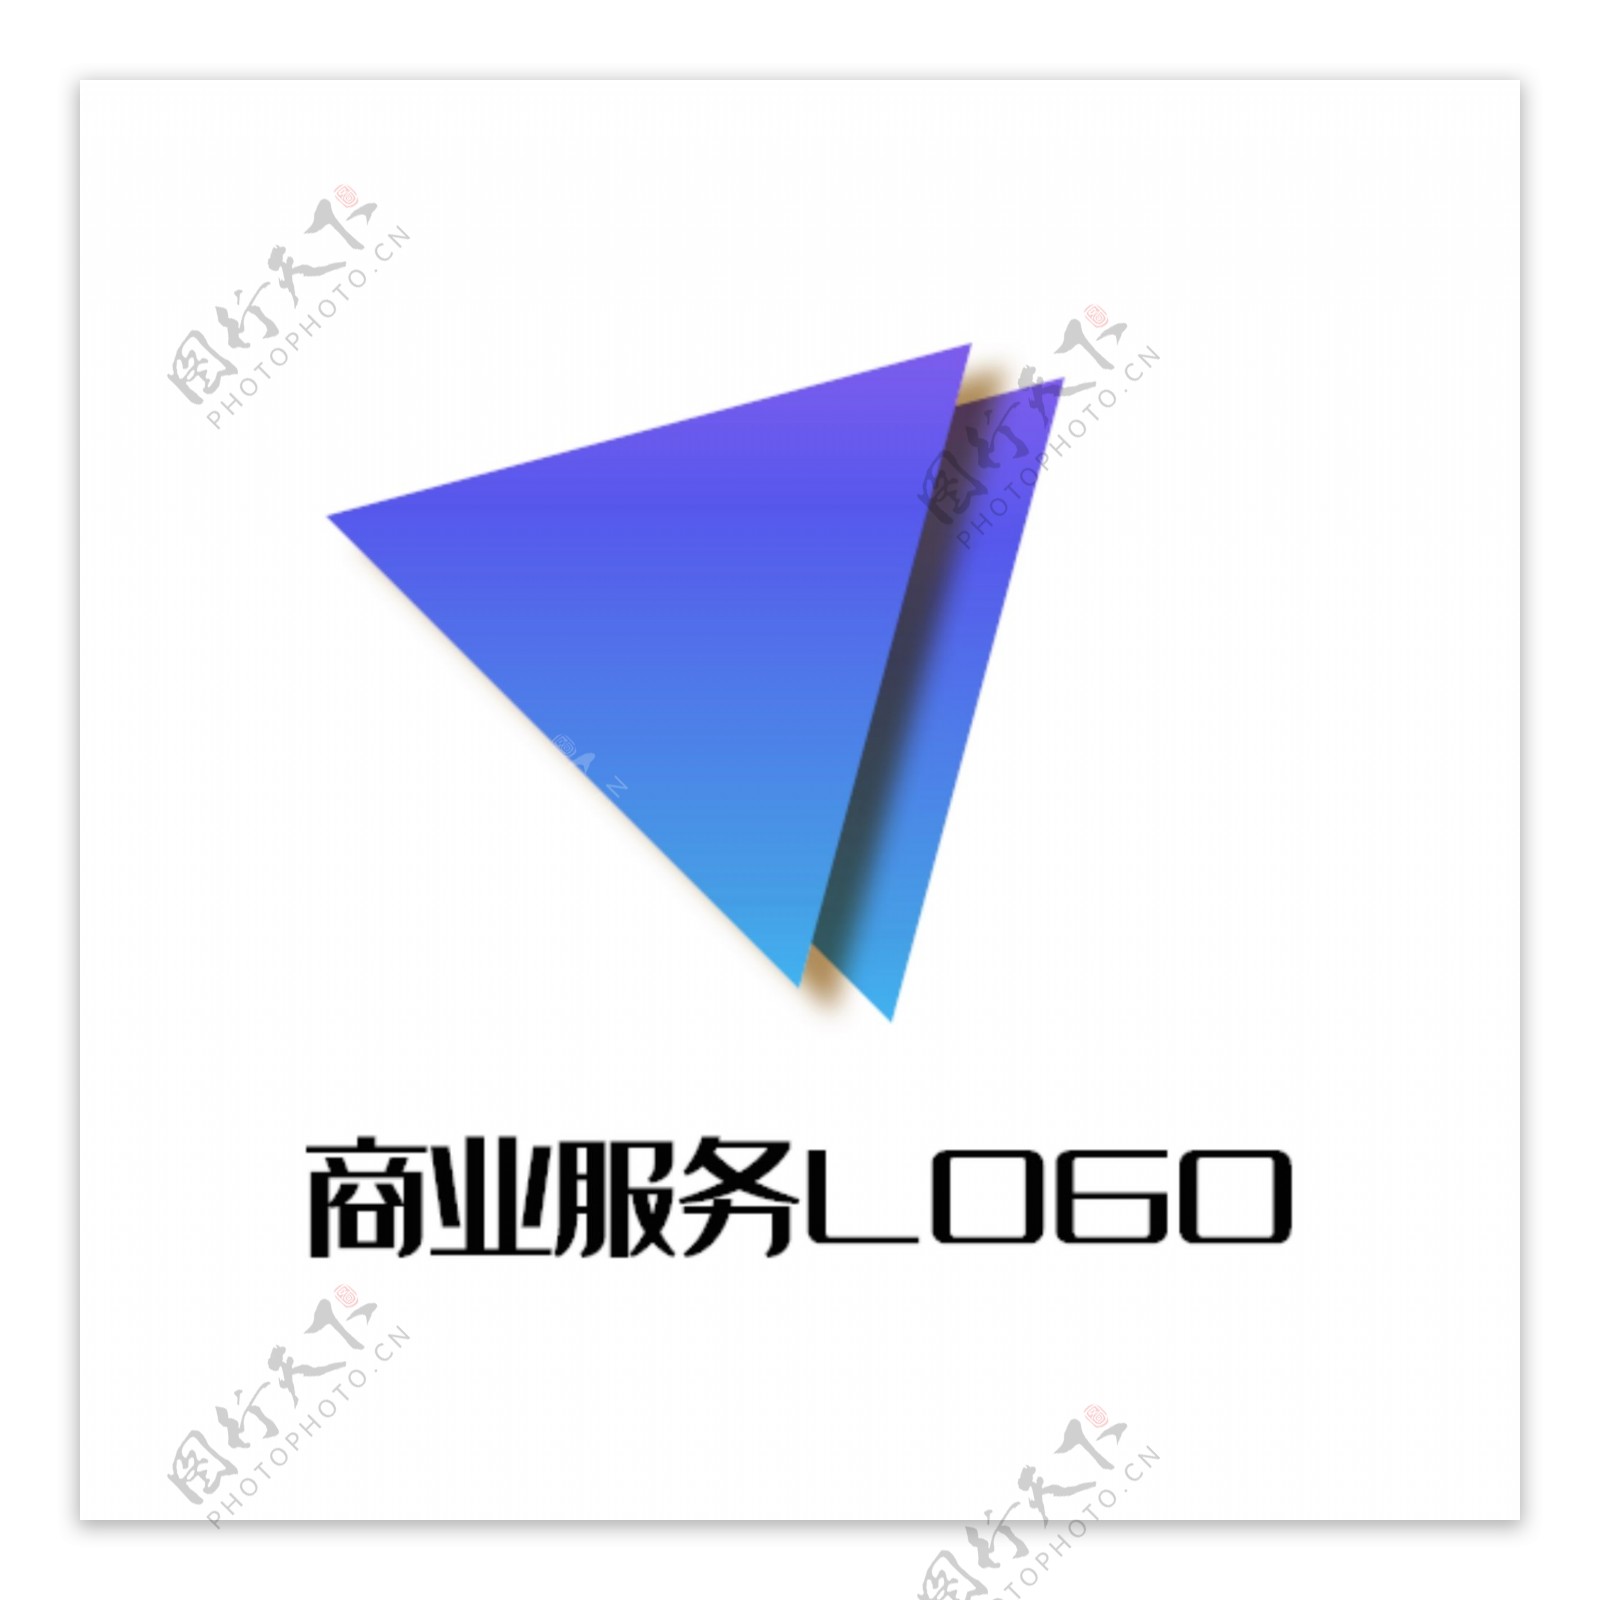 商业服务logo蓝紫三角倾斜重叠播放影音